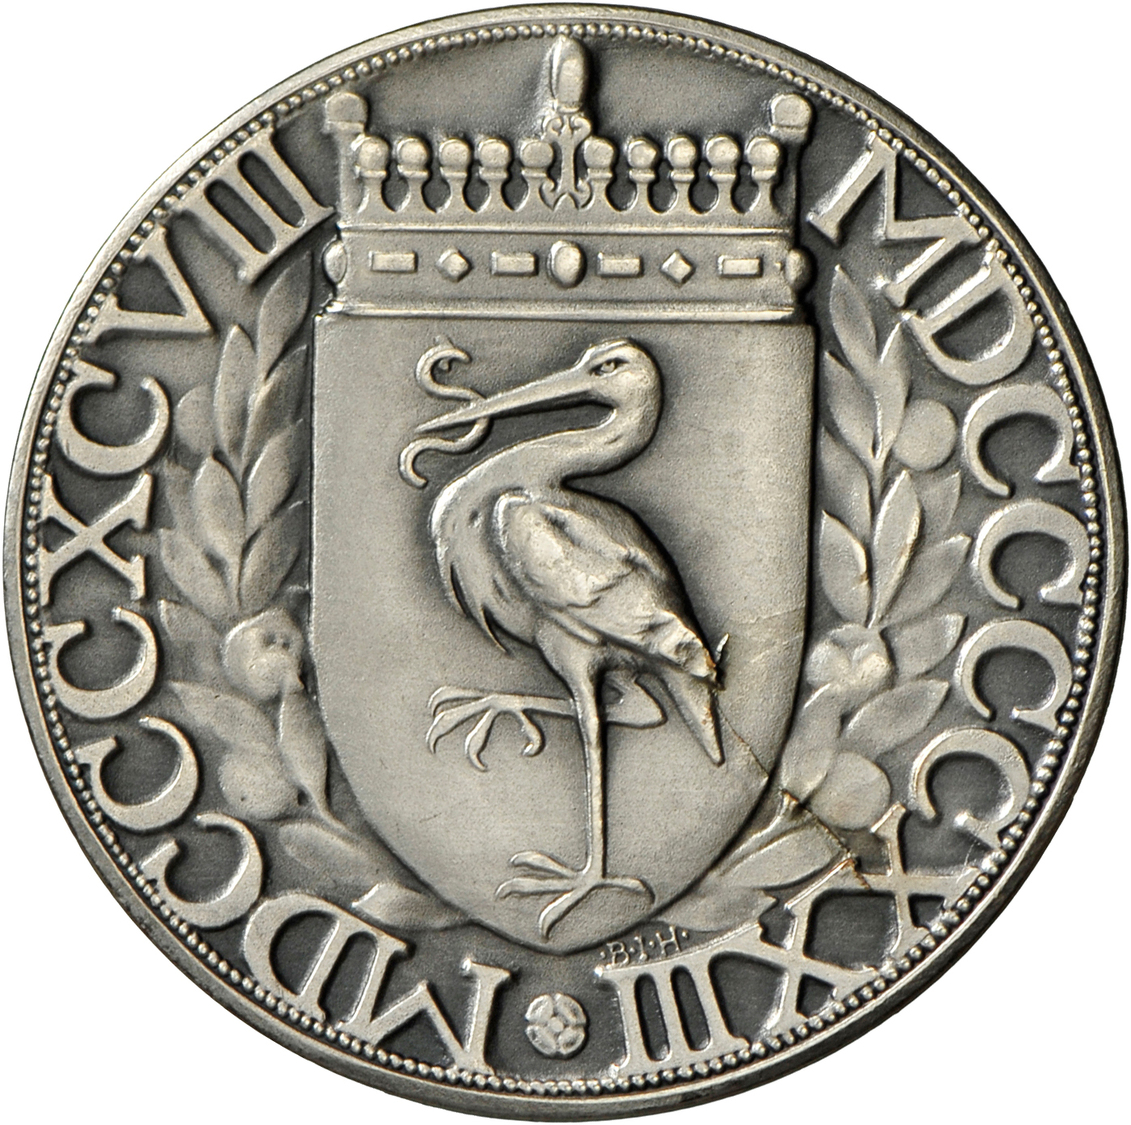 05473 Medaillen Alle Welt: Niederlande, Wilhelmina I. 1890-1948: Bronzemedaille 1923, Versilbert, Signiert J. Dupuis/B.I - Non Classés